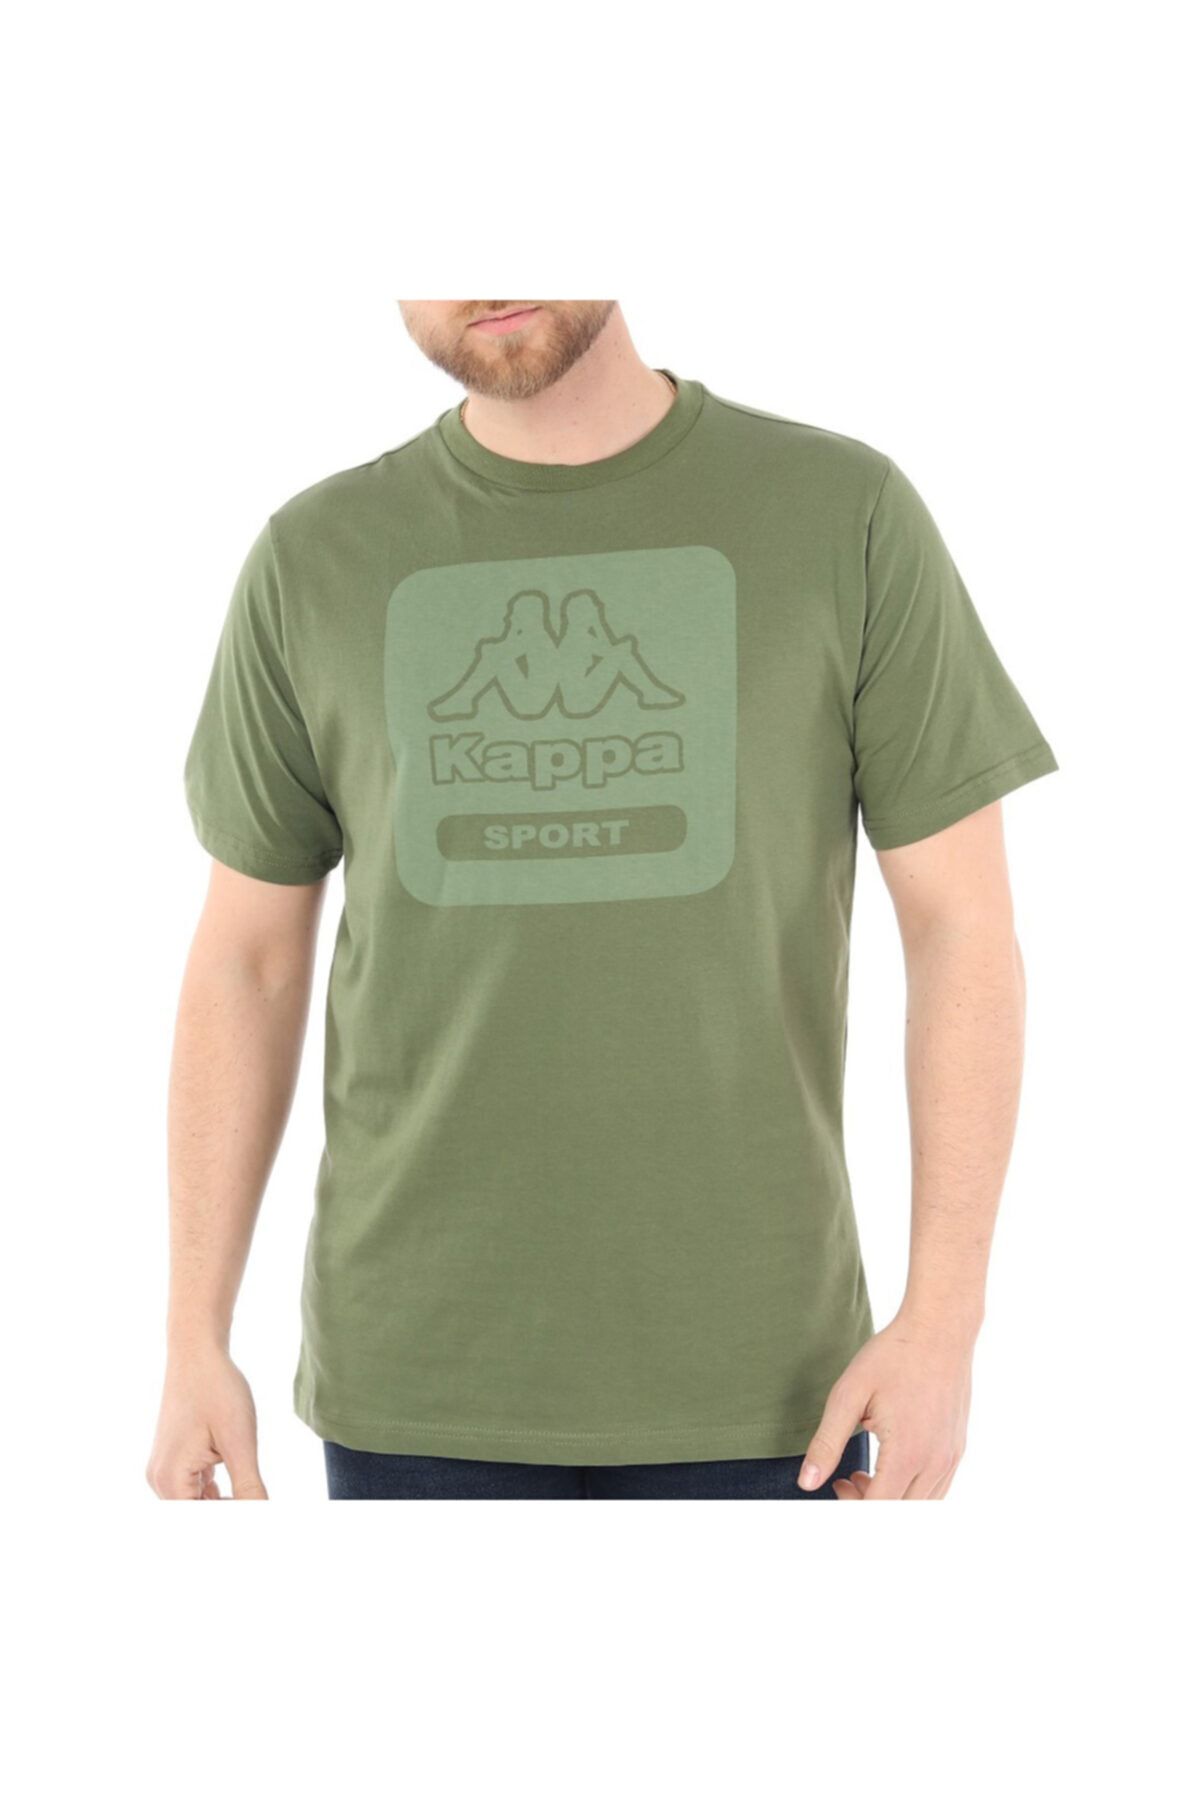 Kappa Erkek Haki Baskılı Spor T-shirt